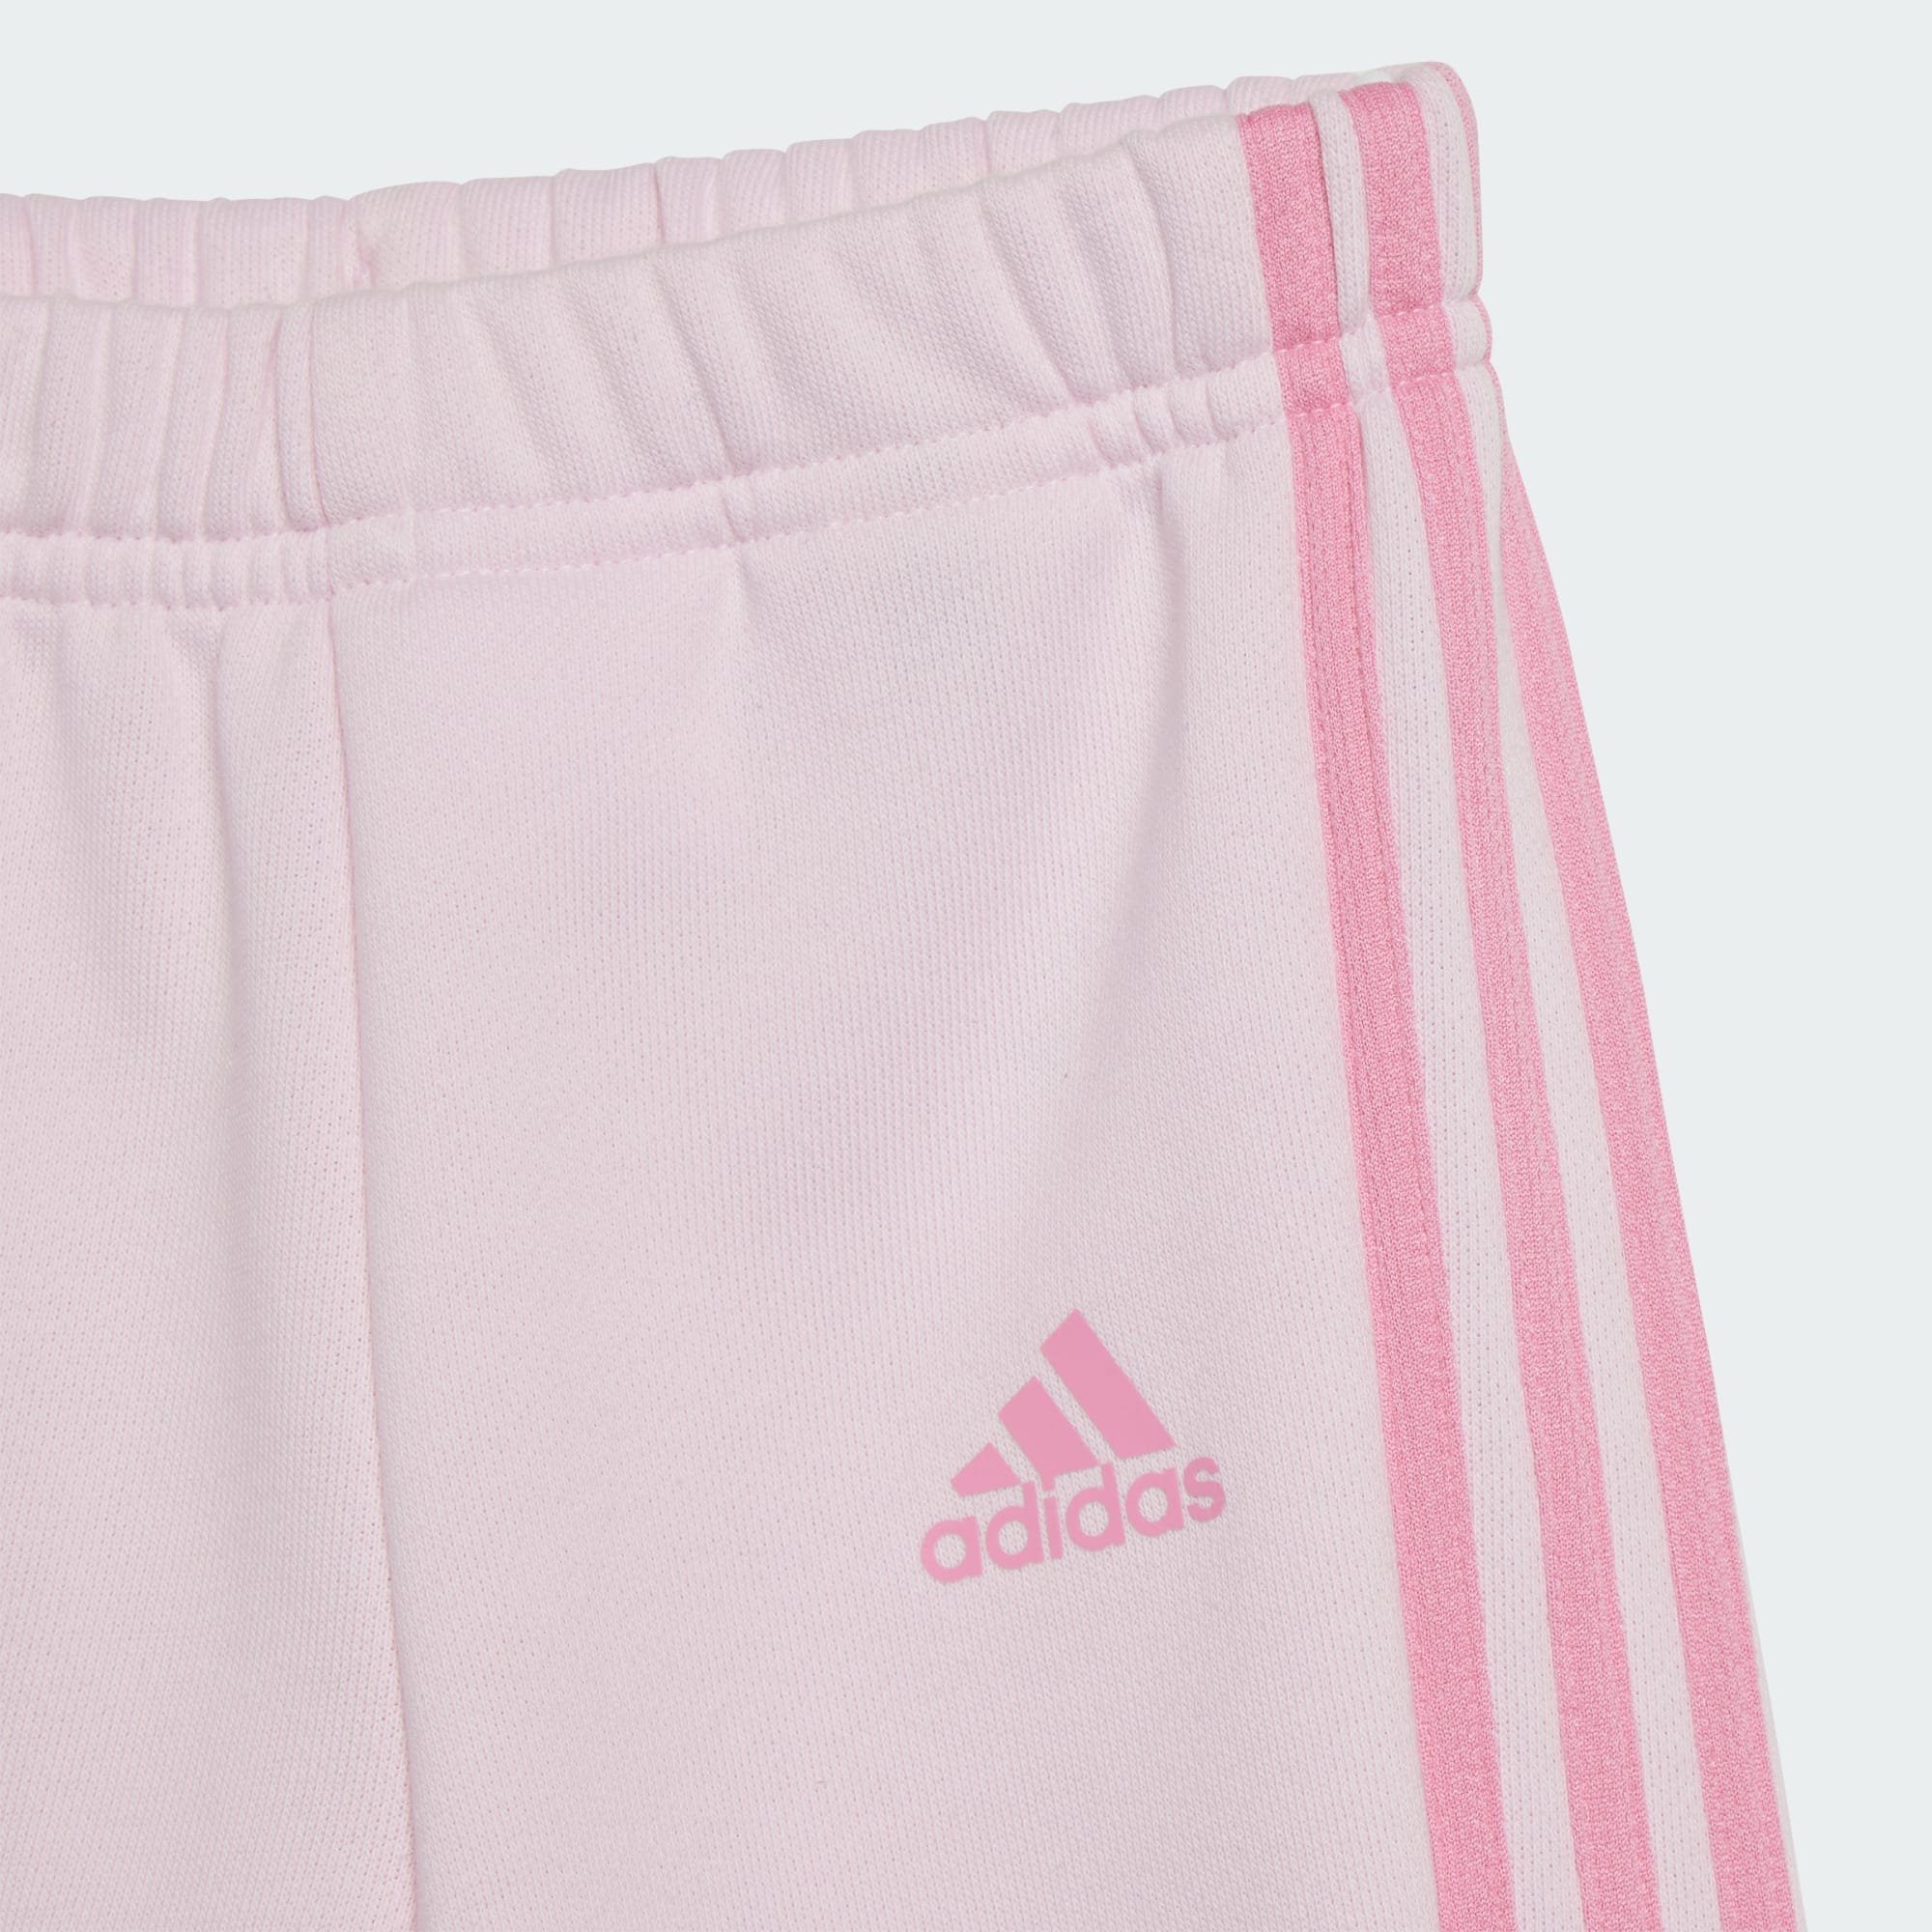 Bliss Pink Pink Clear ESSENTIALS adidas Trainingsanzug KIDS / PRINT JOGGINGANZUG Sportswear ALLOVER